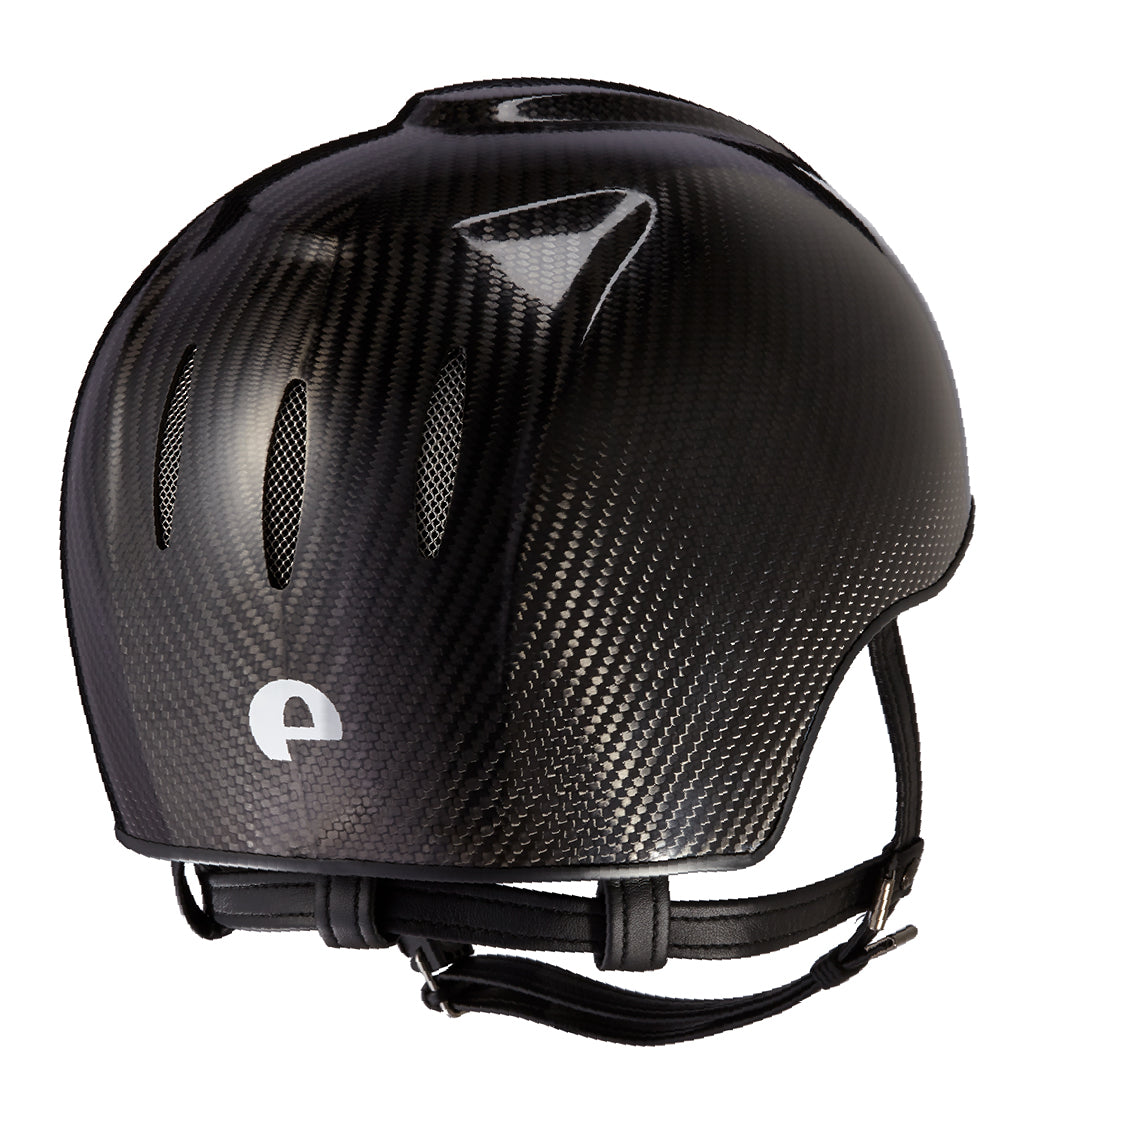 Casco in carbonio E-light Nero lucido senza visiera, griglia in acciaio e cinturino standard | El gaucho sport